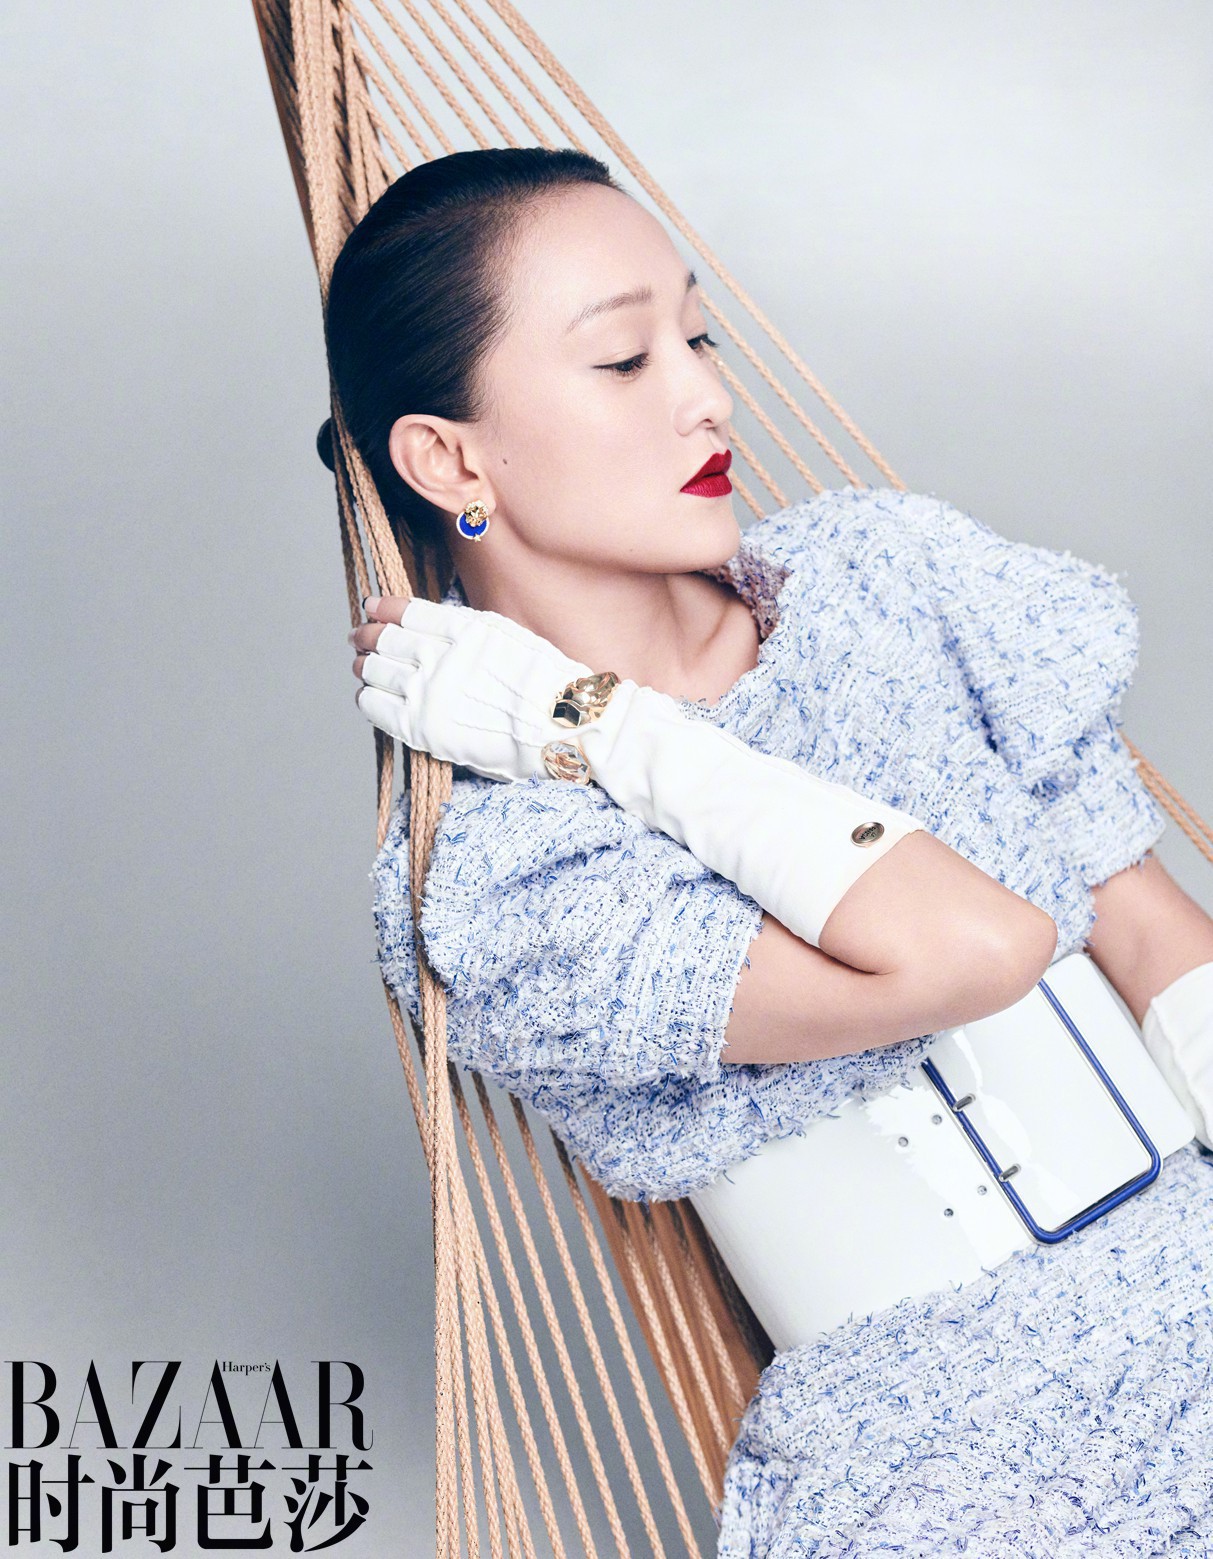 Chanel công bố Kim Go Eun là đại sứ thương hiệu tại Hàn Quốc  Phong cách  sao  Việt Giải Trí